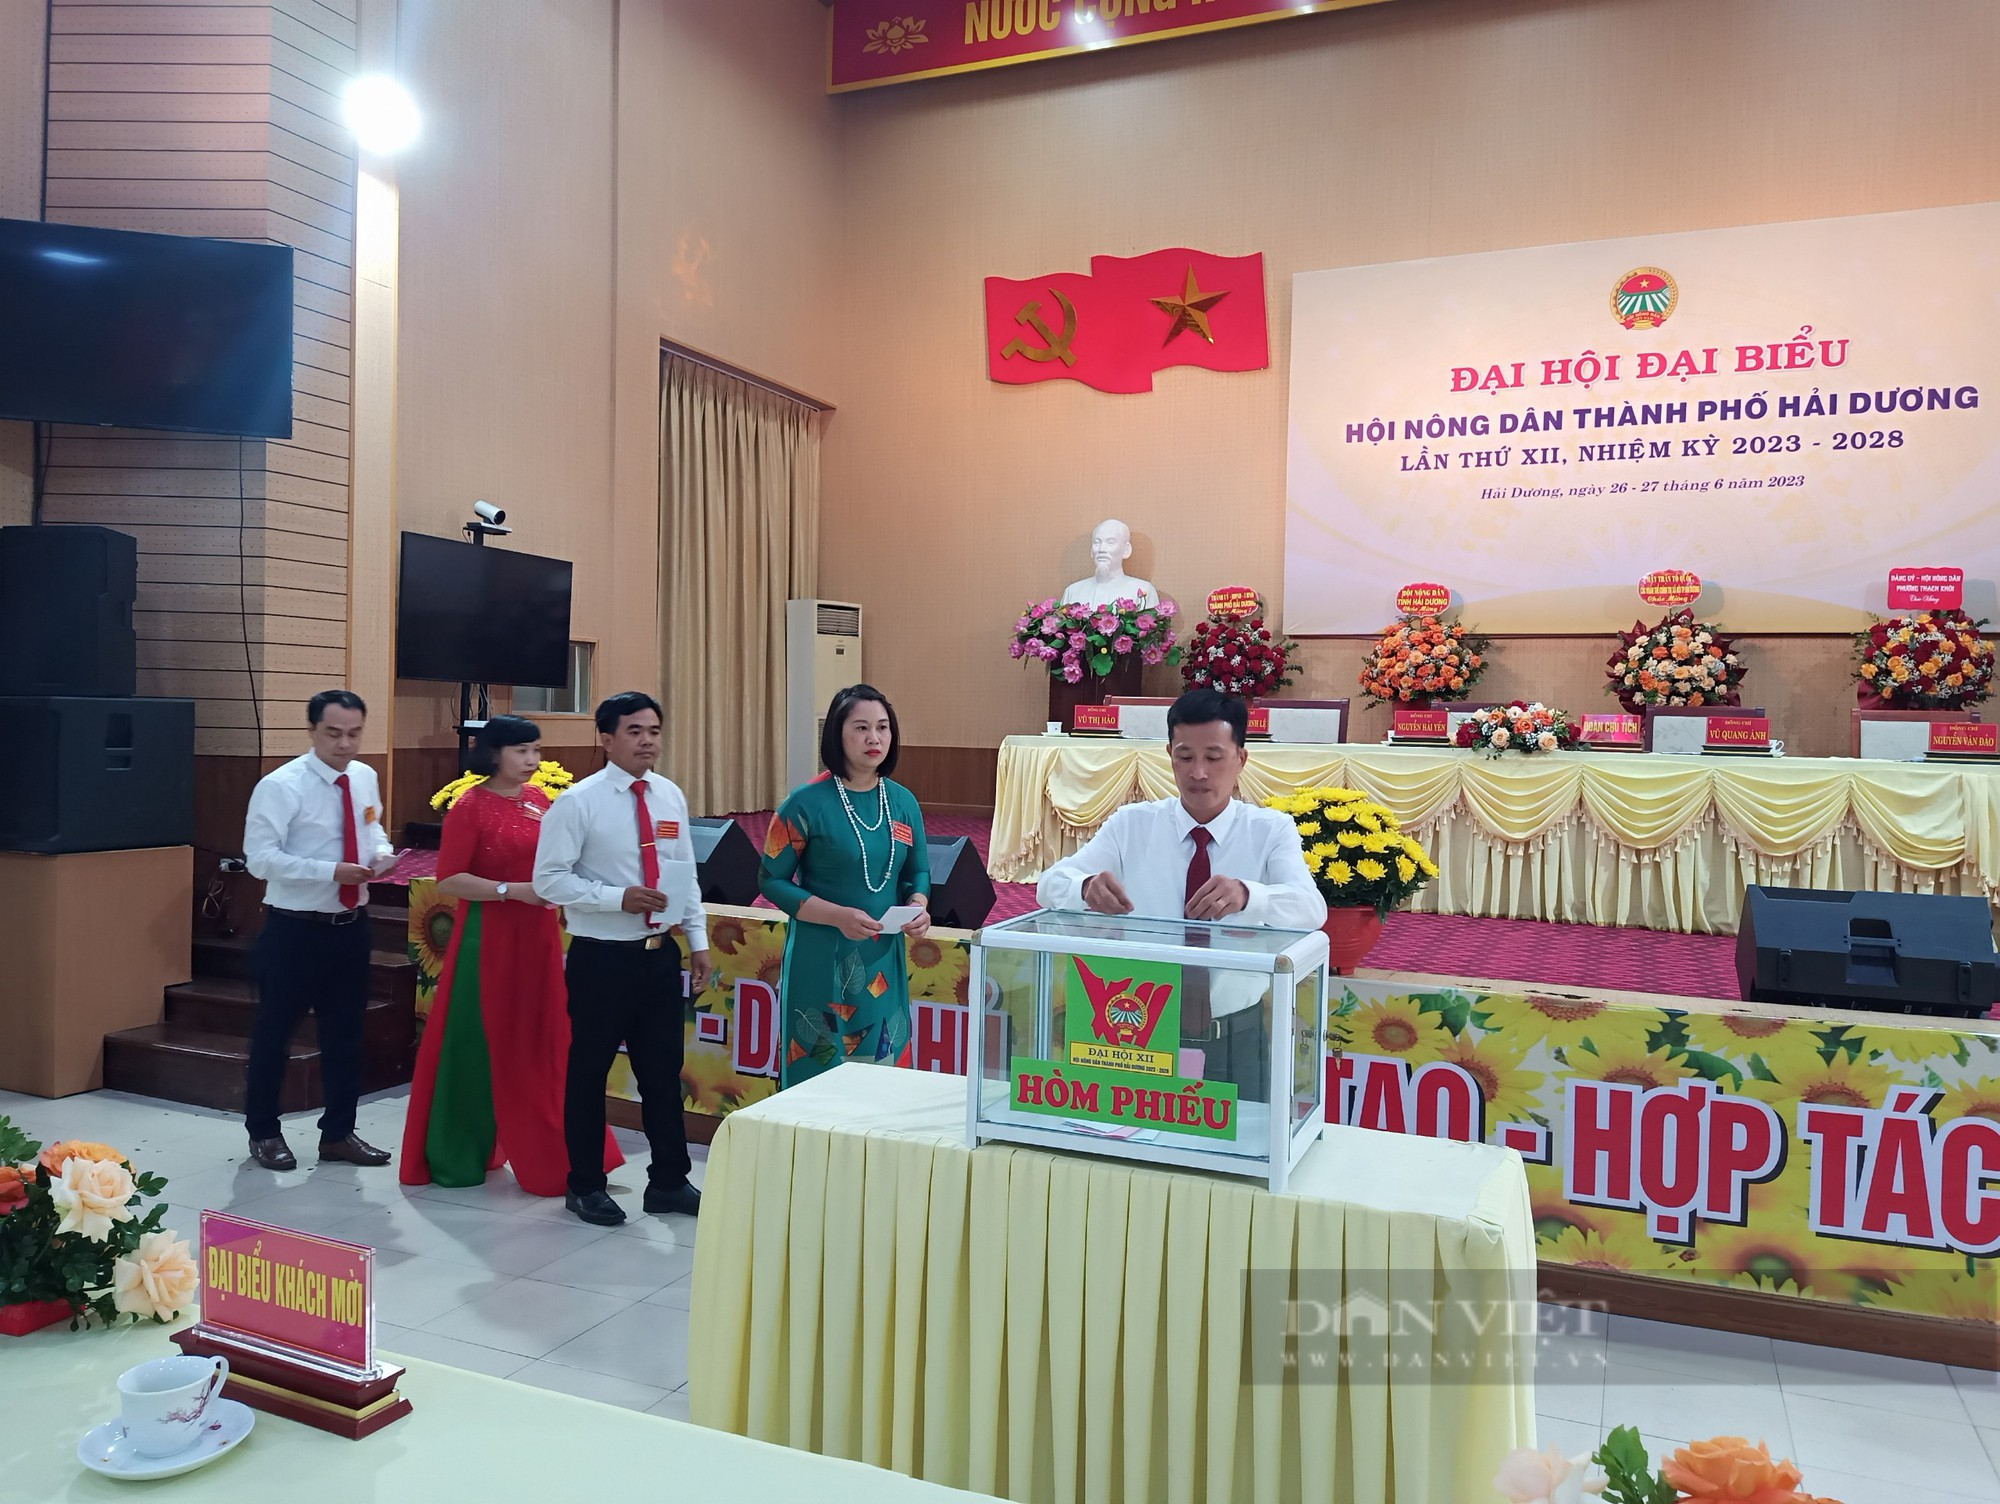 Đại hội Đại biểu Hội nông dân TP Hải Dương, bà Nguyễn Hải Yến tái đắc cử chức Chủ tịch - Ảnh 6.